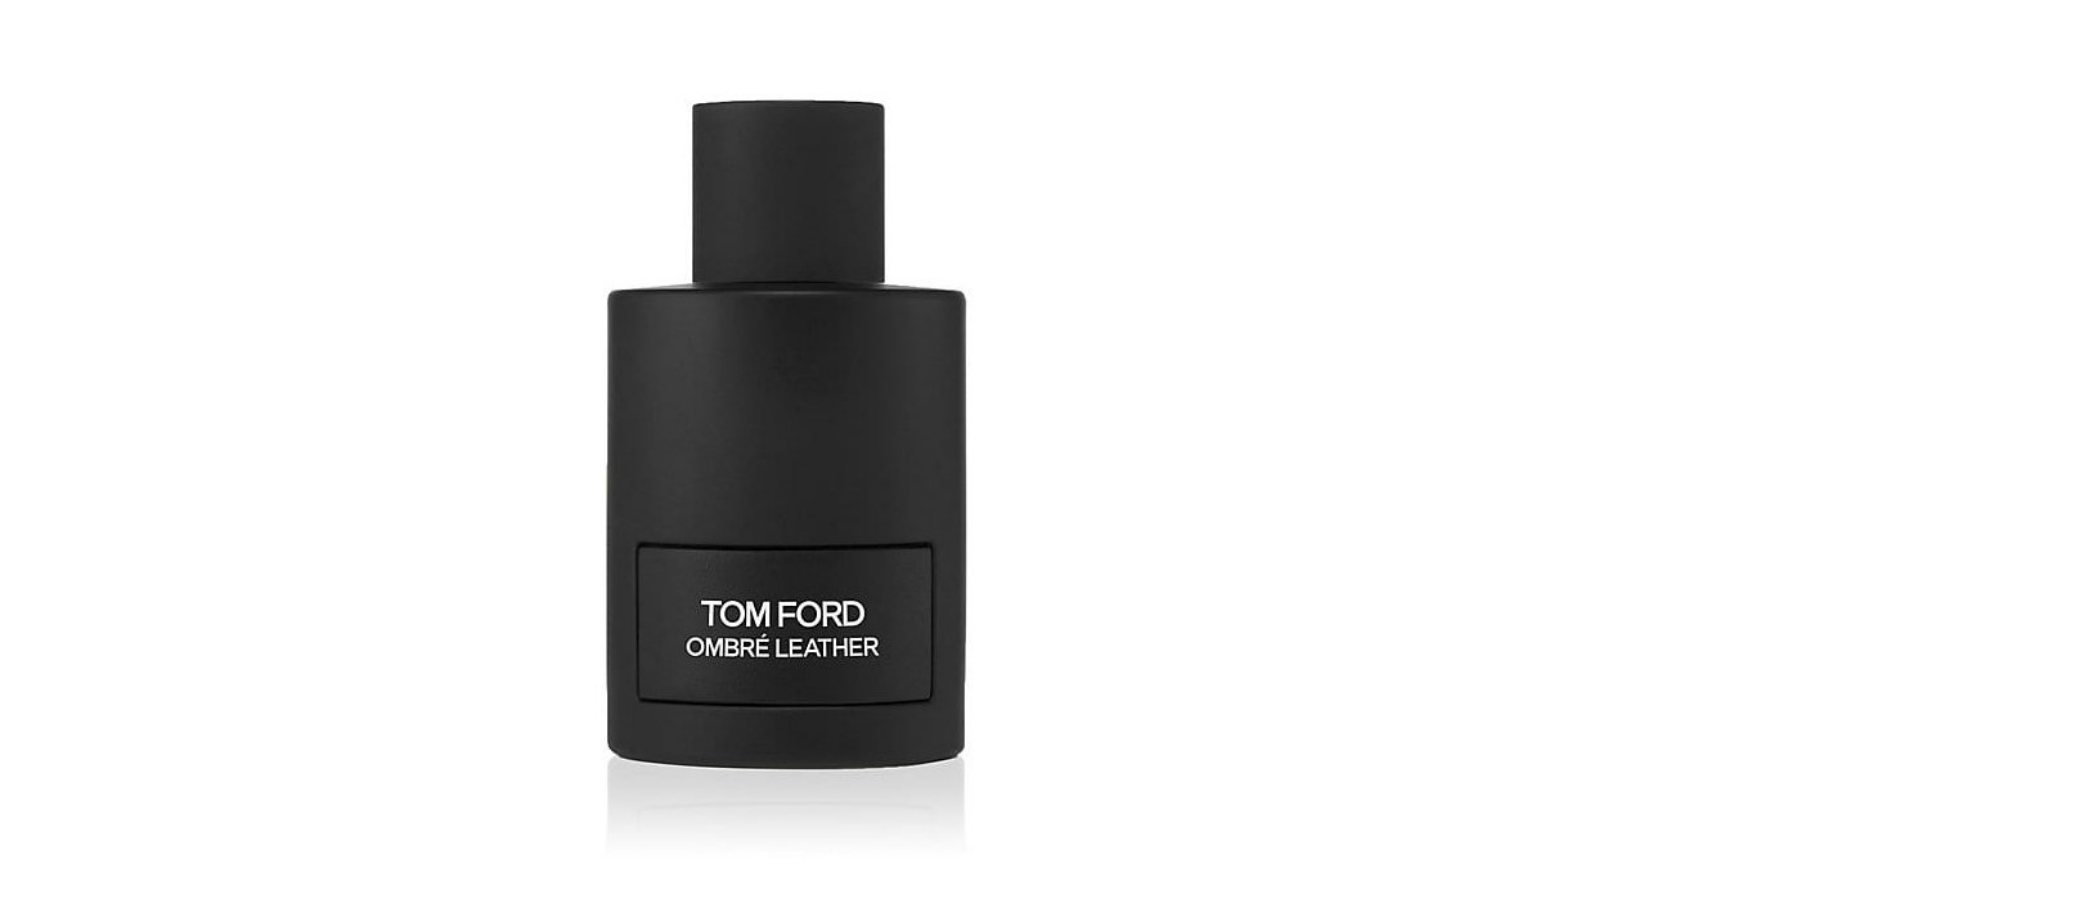 Así es 'Ombré Leather', la nueva versión del perfume floral y especiado de Tom Ford